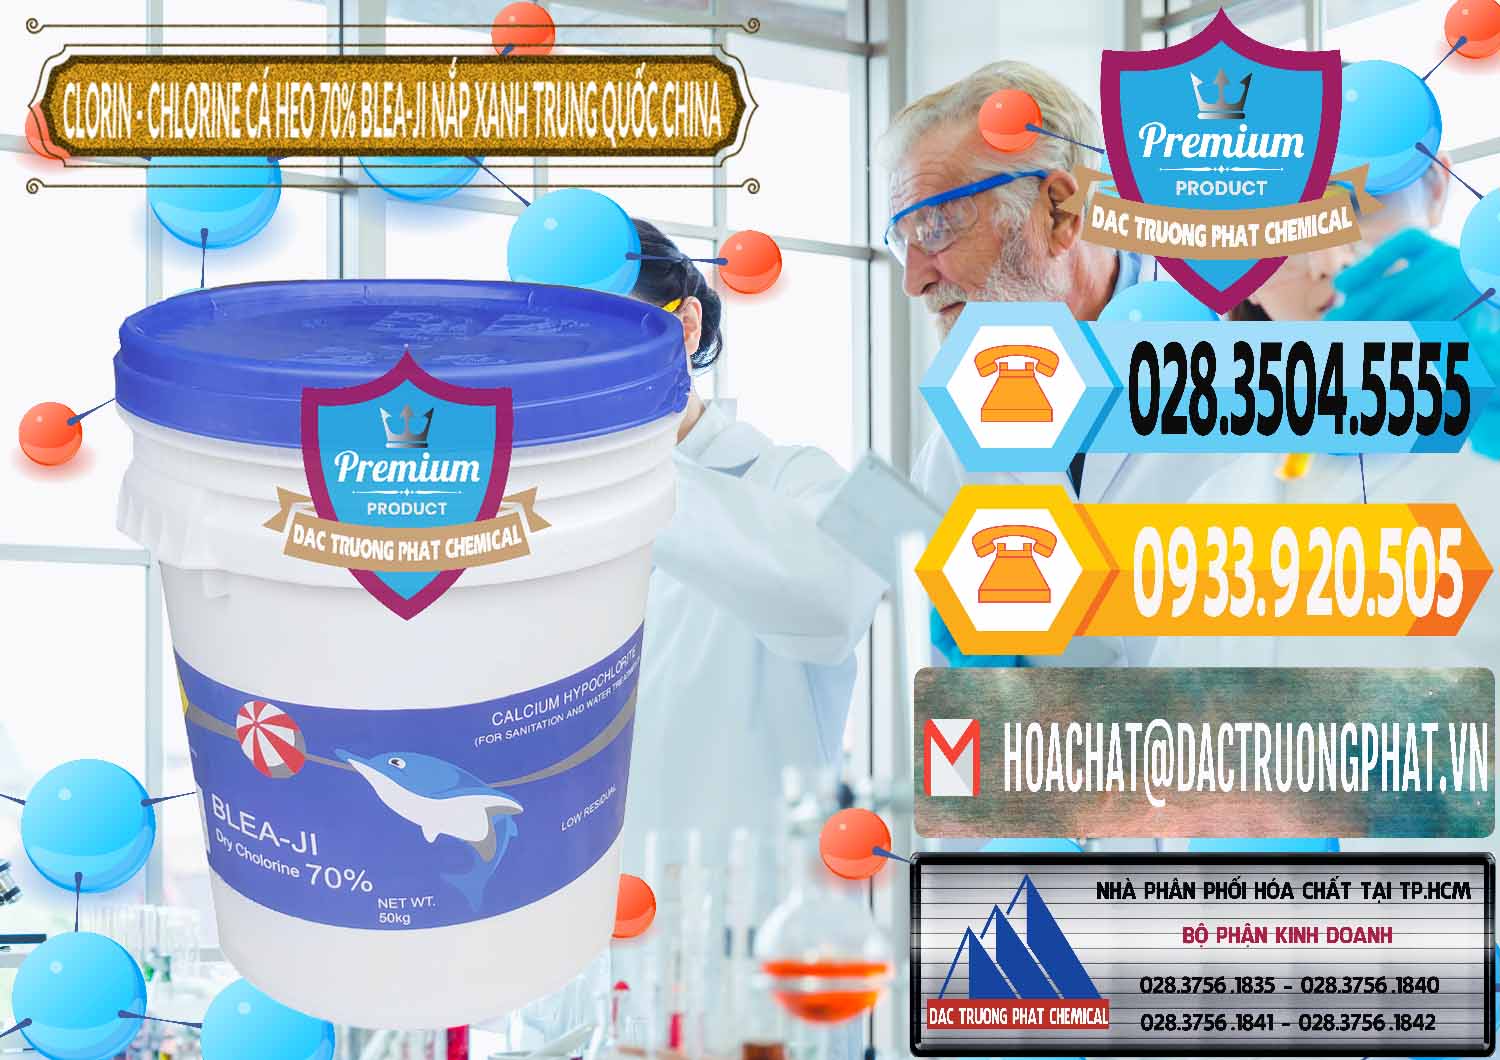 Đơn vị nhập khẩu _ bán Clorin - Chlorine Cá Heo 70% Cá Heo Blea-Ji Thùng Tròn Nắp Xanh Trung Quốc China - 0208 - Nhà phân phối & cung cấp hóa chất tại TP.HCM - hoachattayrua.net